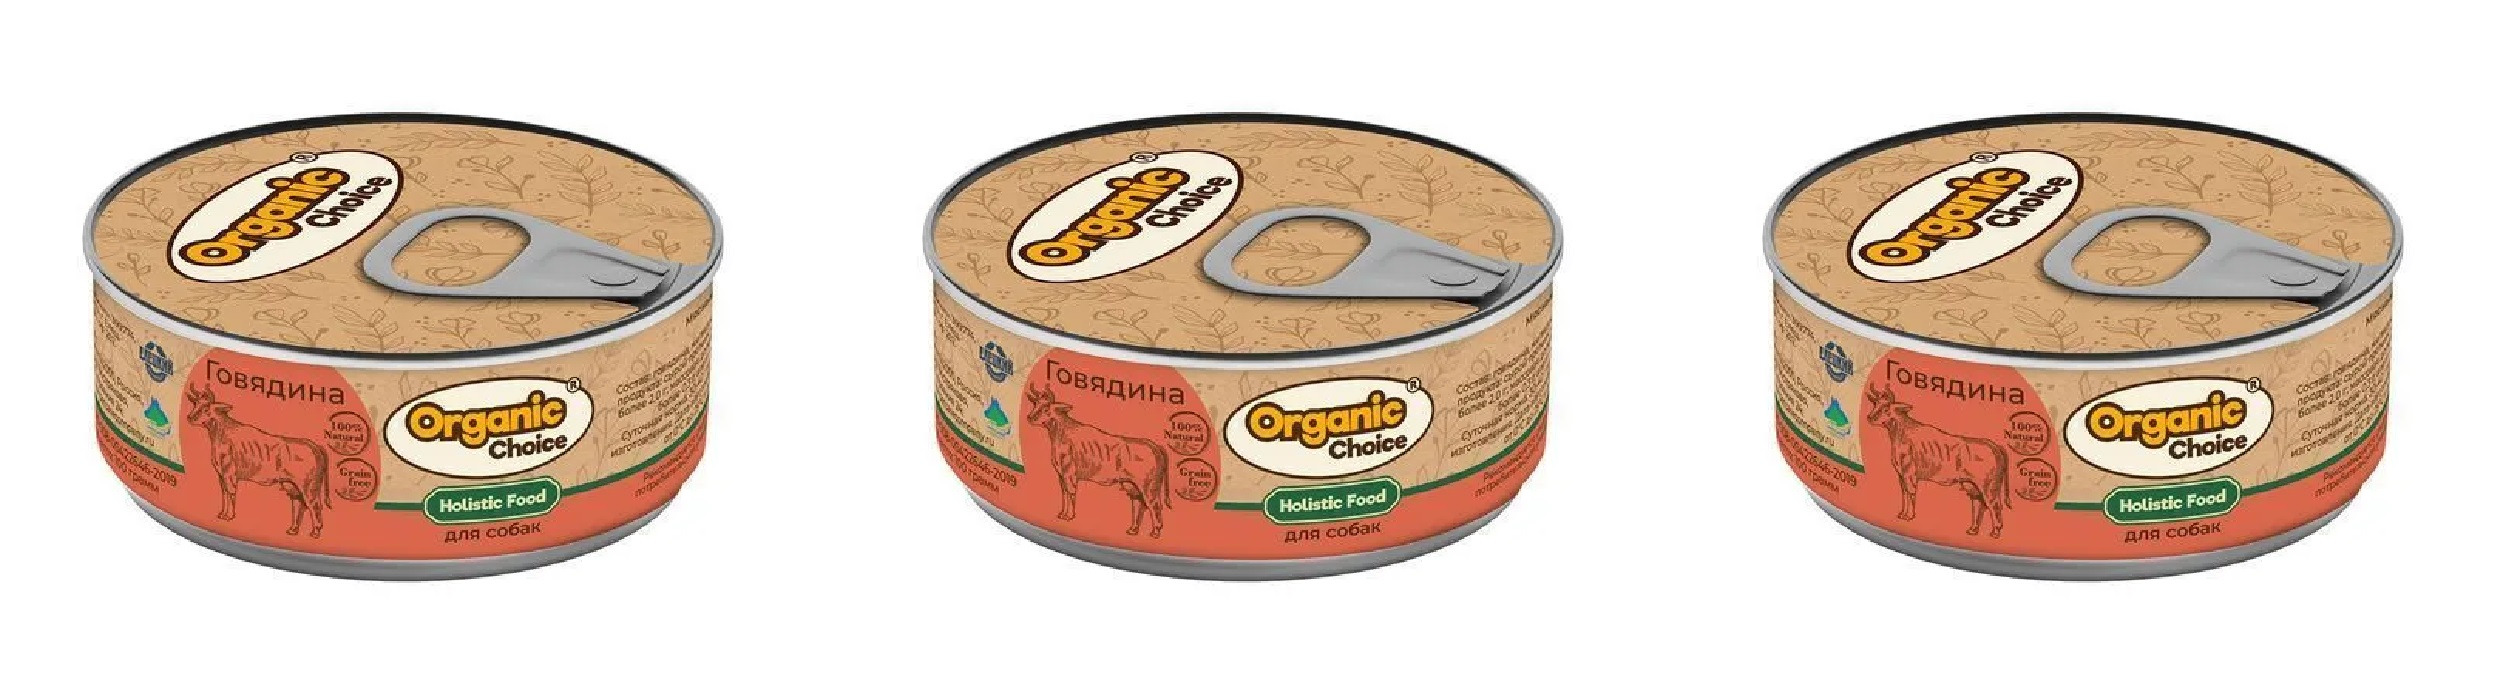 Консервы для собак Organic Сhoice с говядиной 3 шт по 100 г